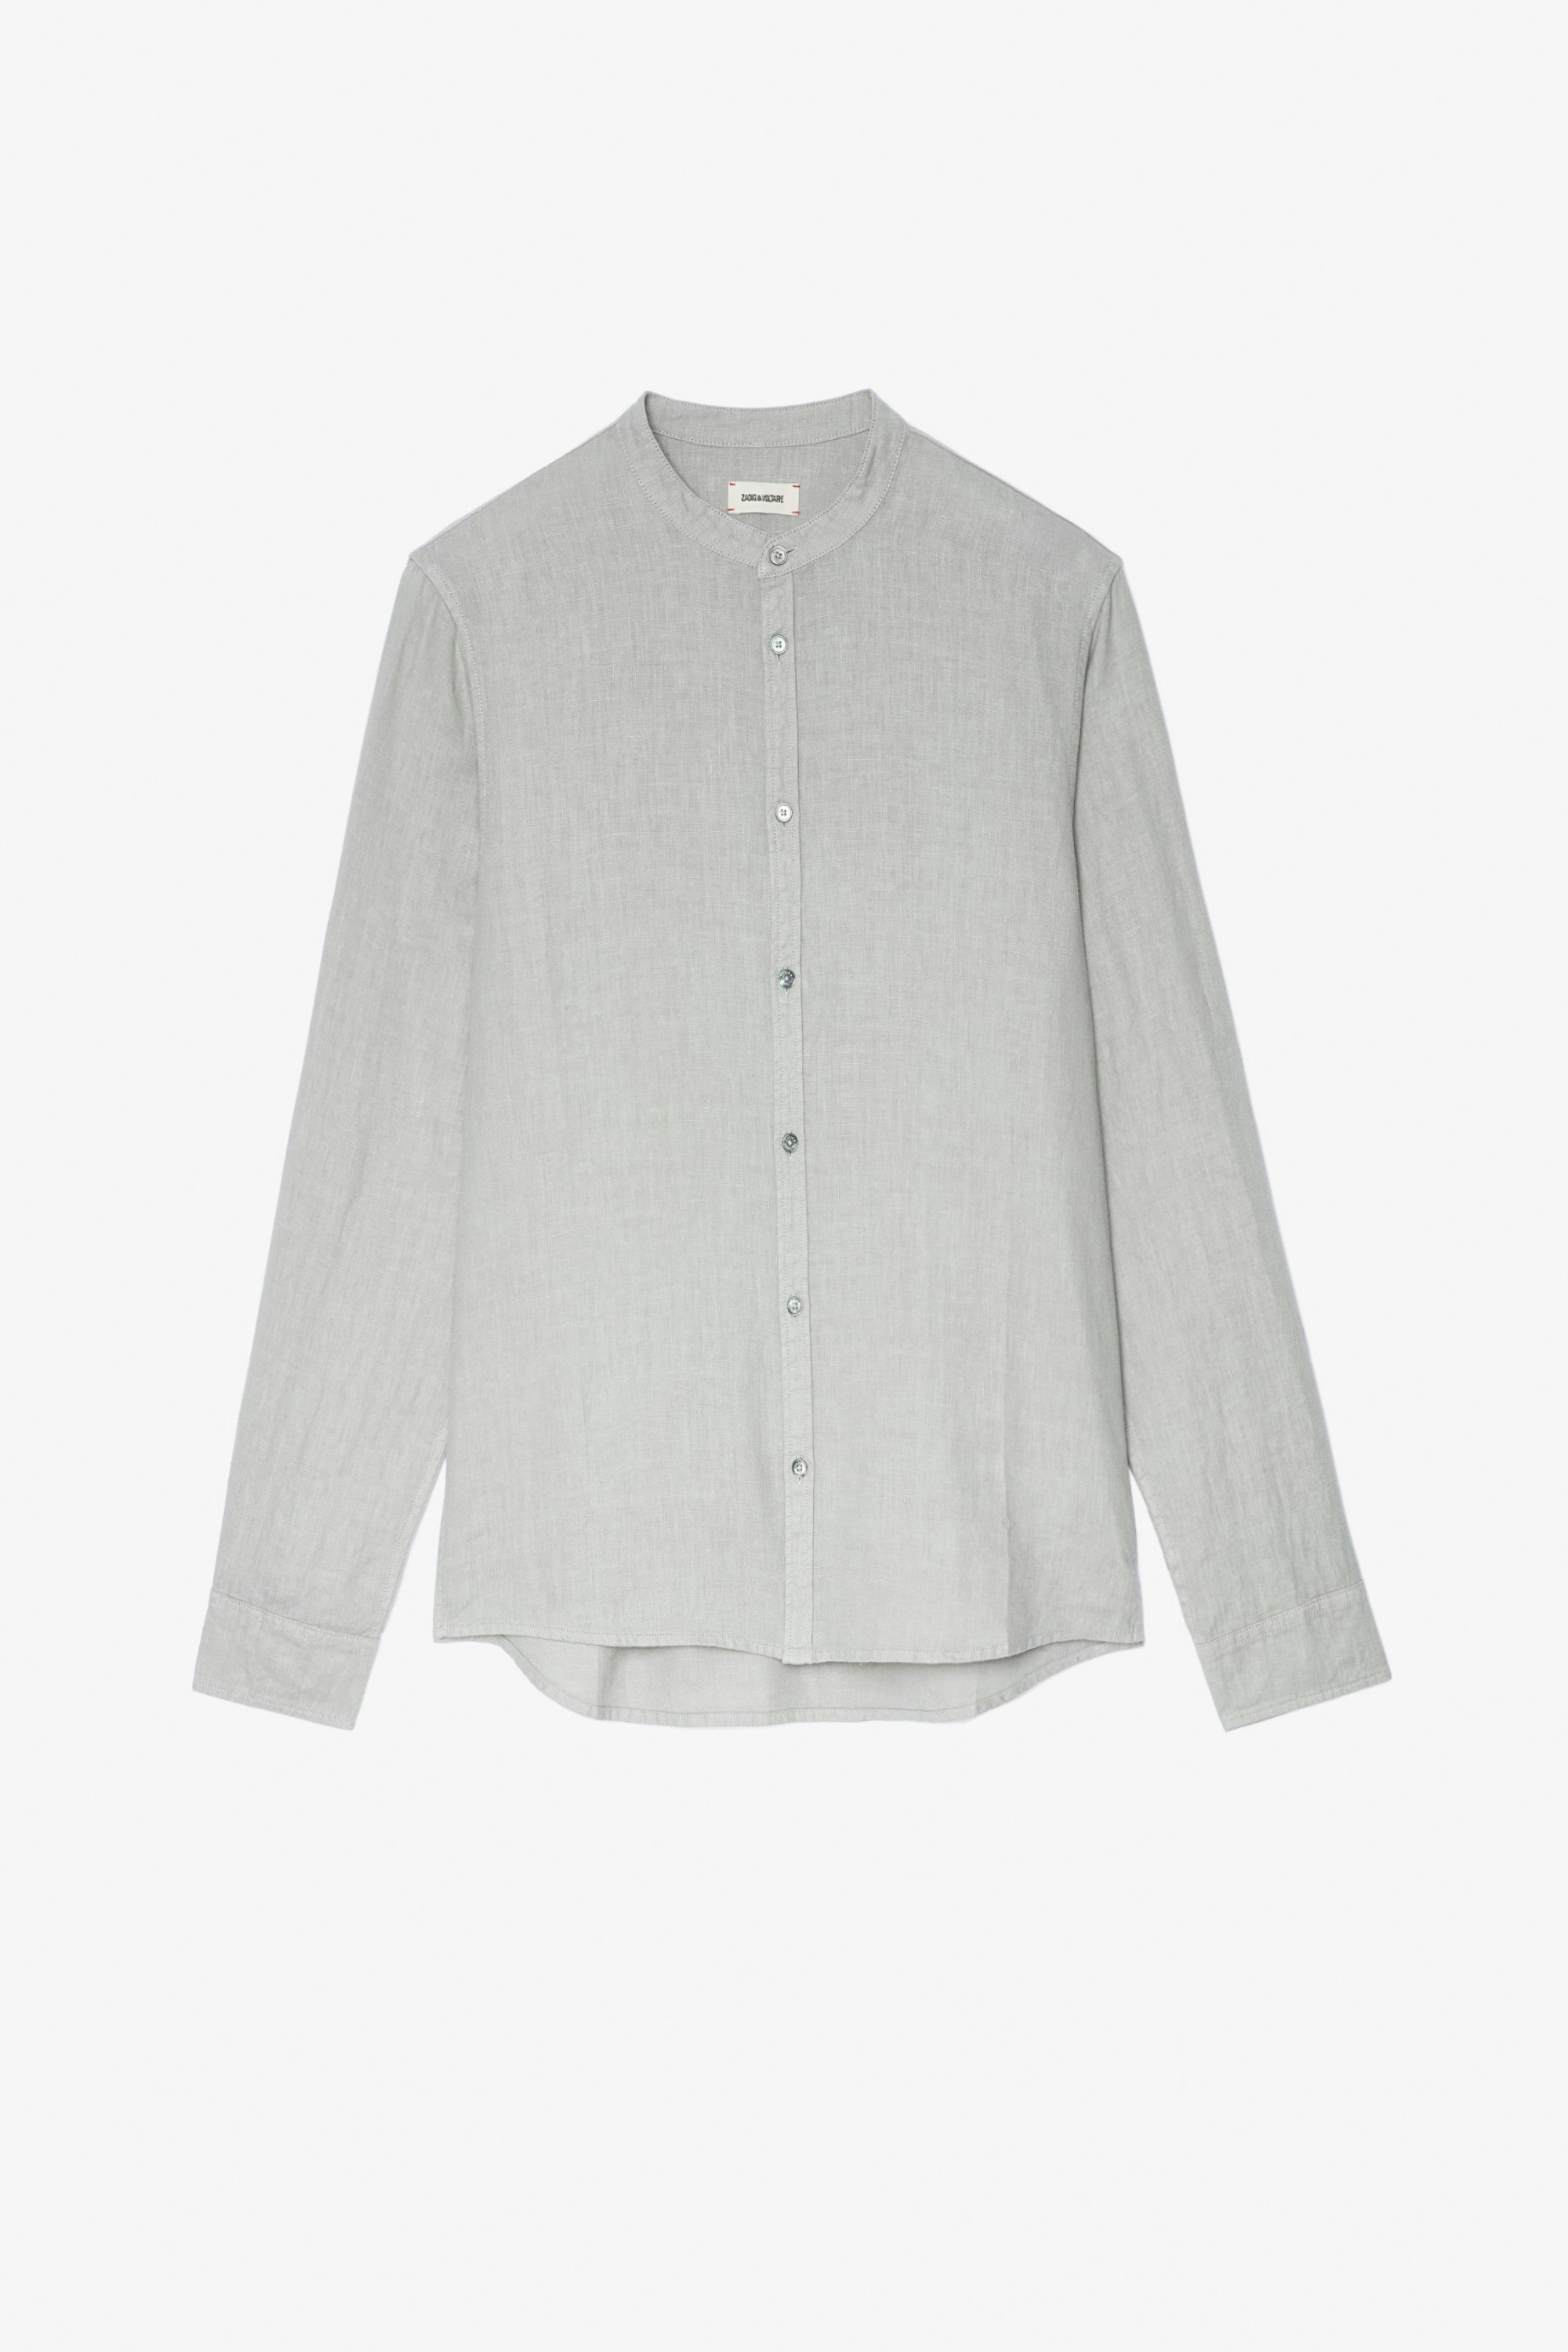 Stan Shirt Men's light grey linen shirt